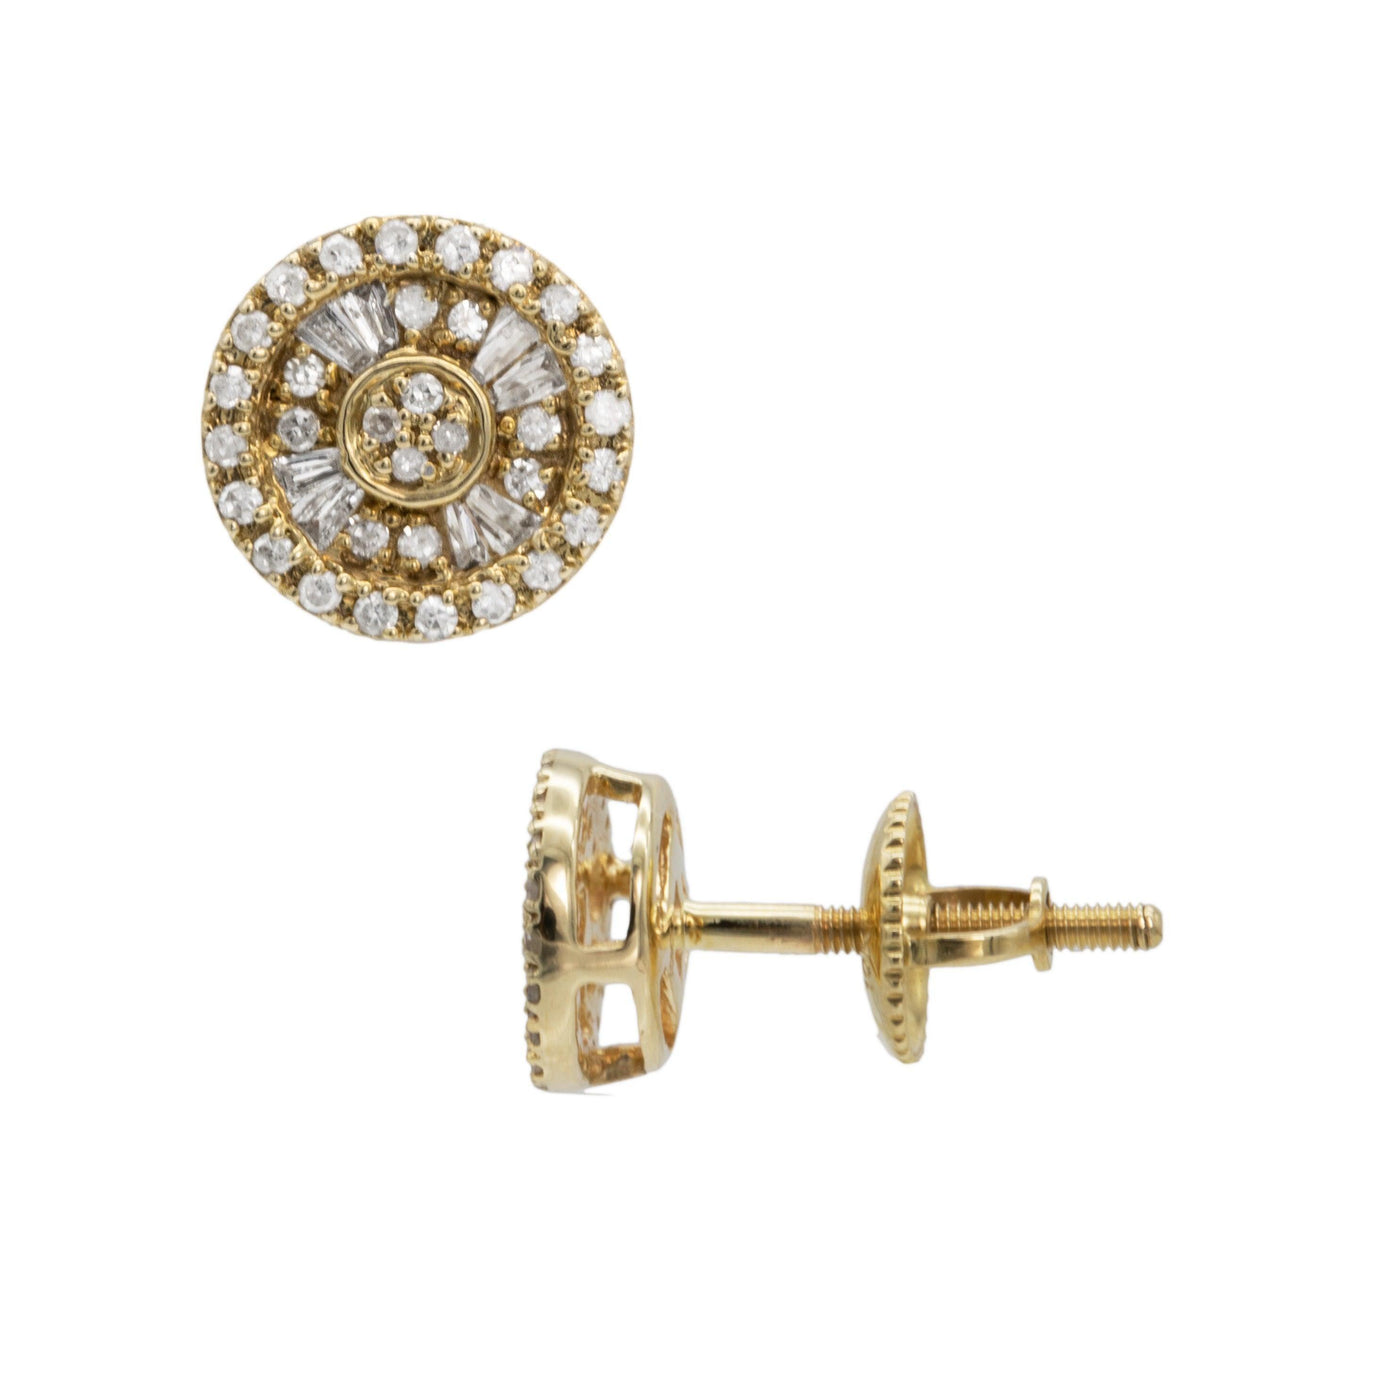 Double Halo Baguette Diamond Stud Earrings 0.29ct 10K Yellow Gold - bayamjewelry